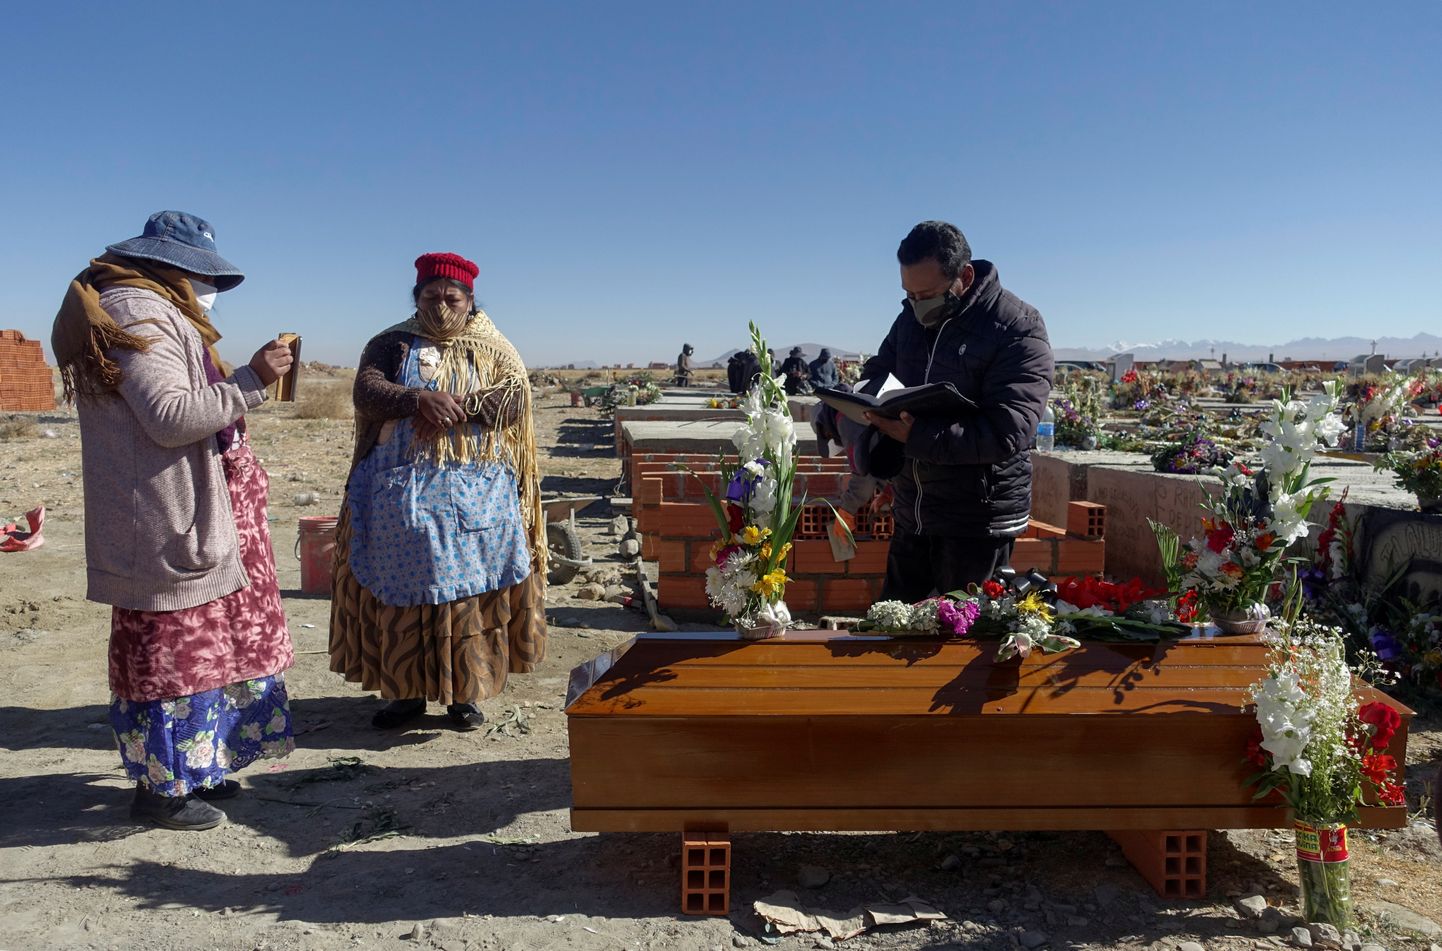 Leinajad Boliivias La Pazi linnas, kust politseinikud on viimastel nädalatel avastanud sadu koroonaviiruse ohvreid, kelle surnukehasid pole minema toimetatud.